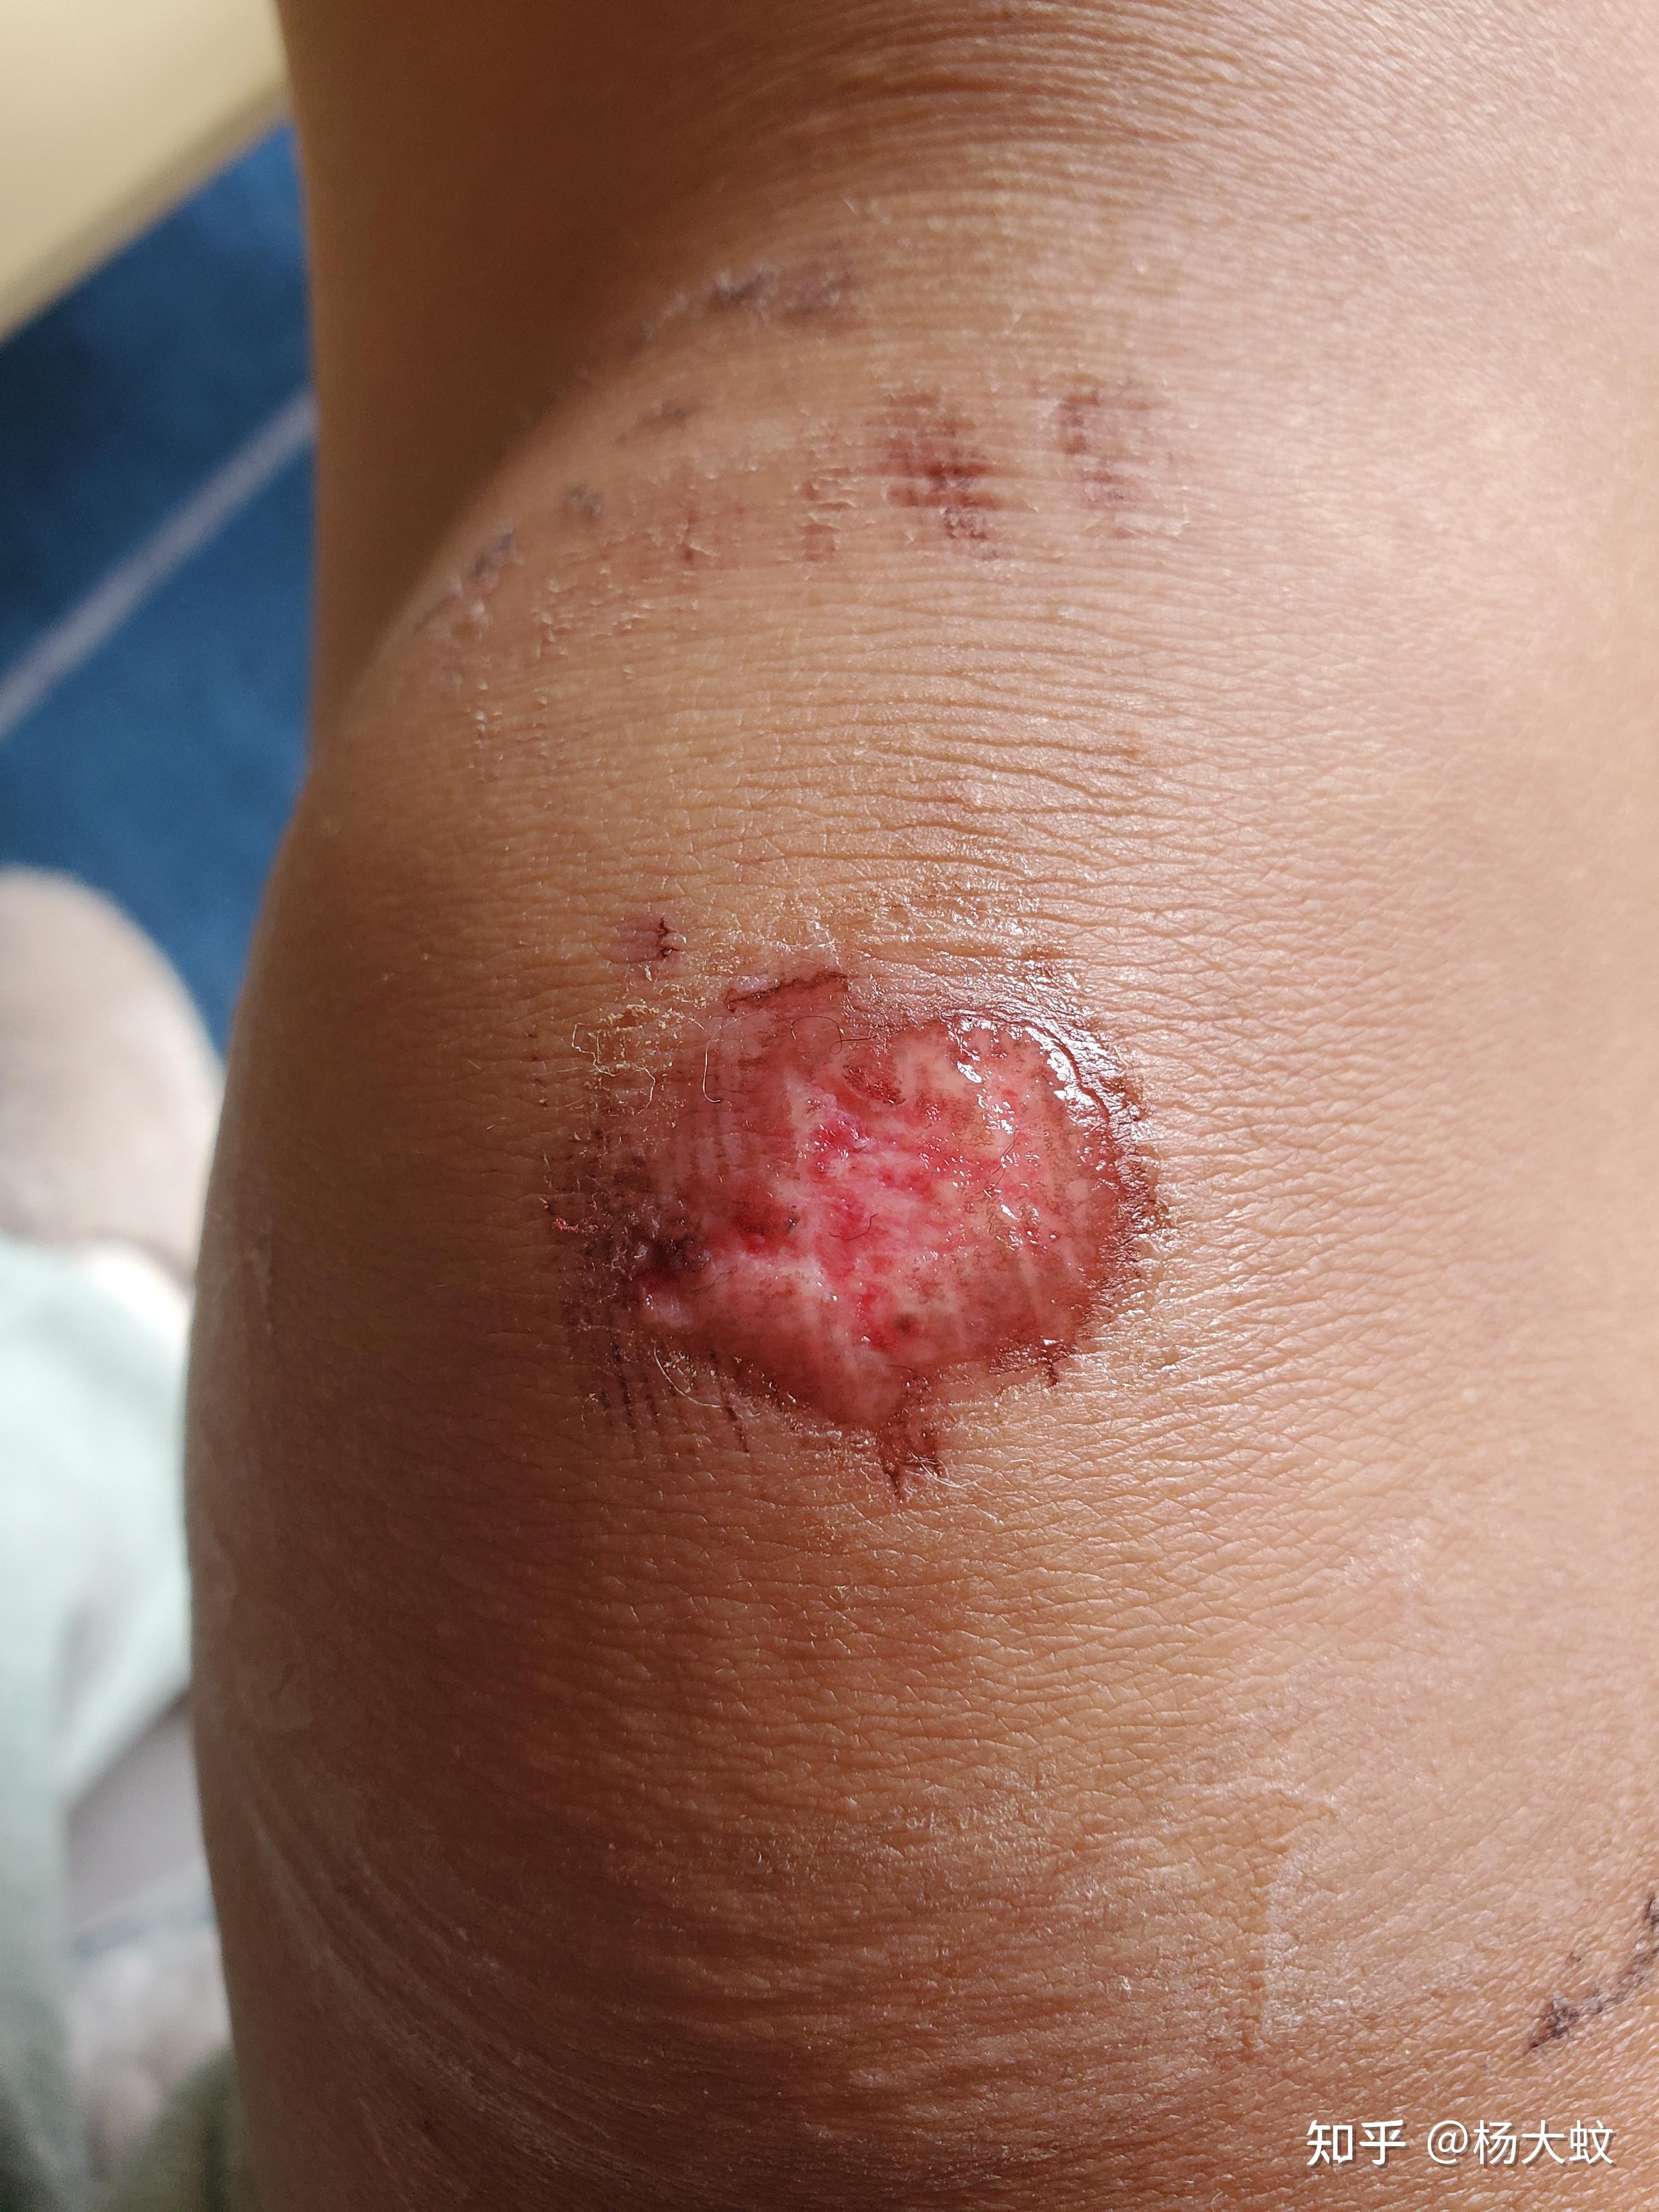 记录一下膝盖磕破皮的痊愈过程